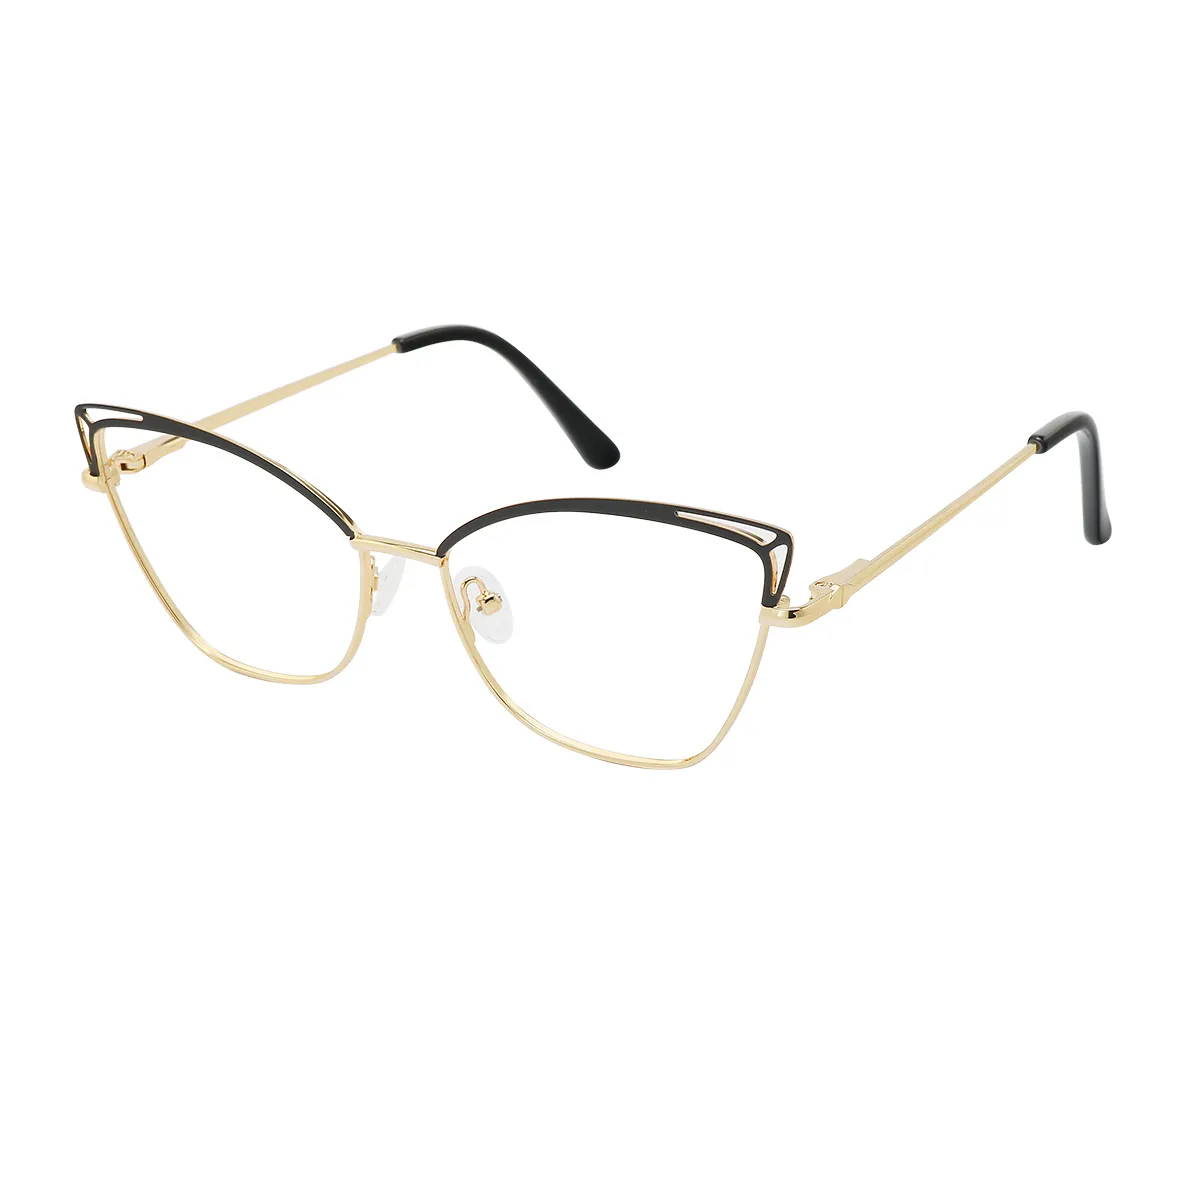 Fashion Cat-eye Black/Gold Reading Glasses for Women